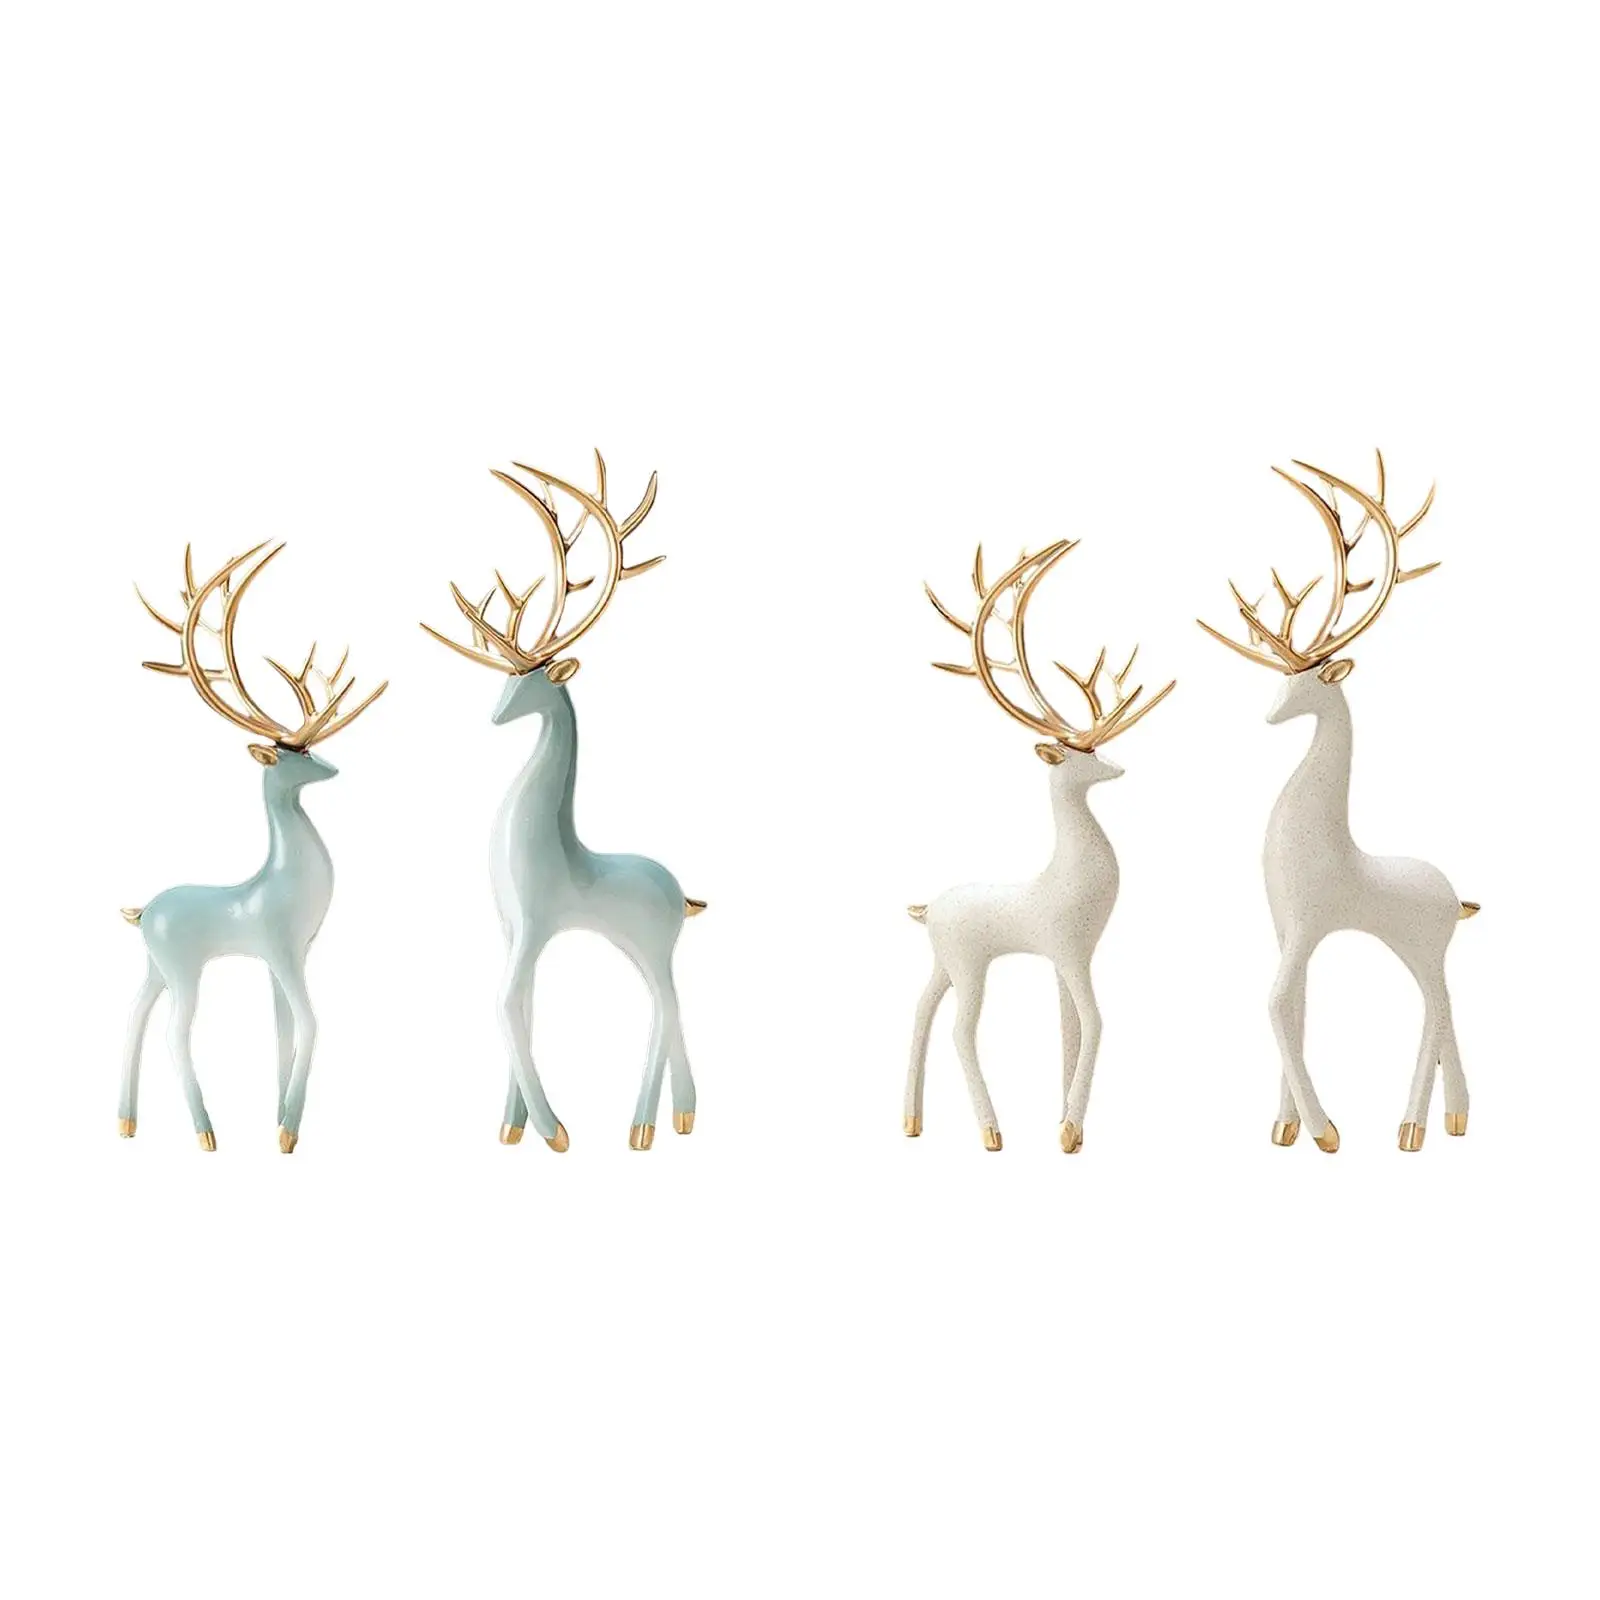 Animal Statue Nordic Art Gifts Ornament Resin Crafts Deer Sculpture Decoration Deer Figurines for Bathroom Car Home Shelf Desk